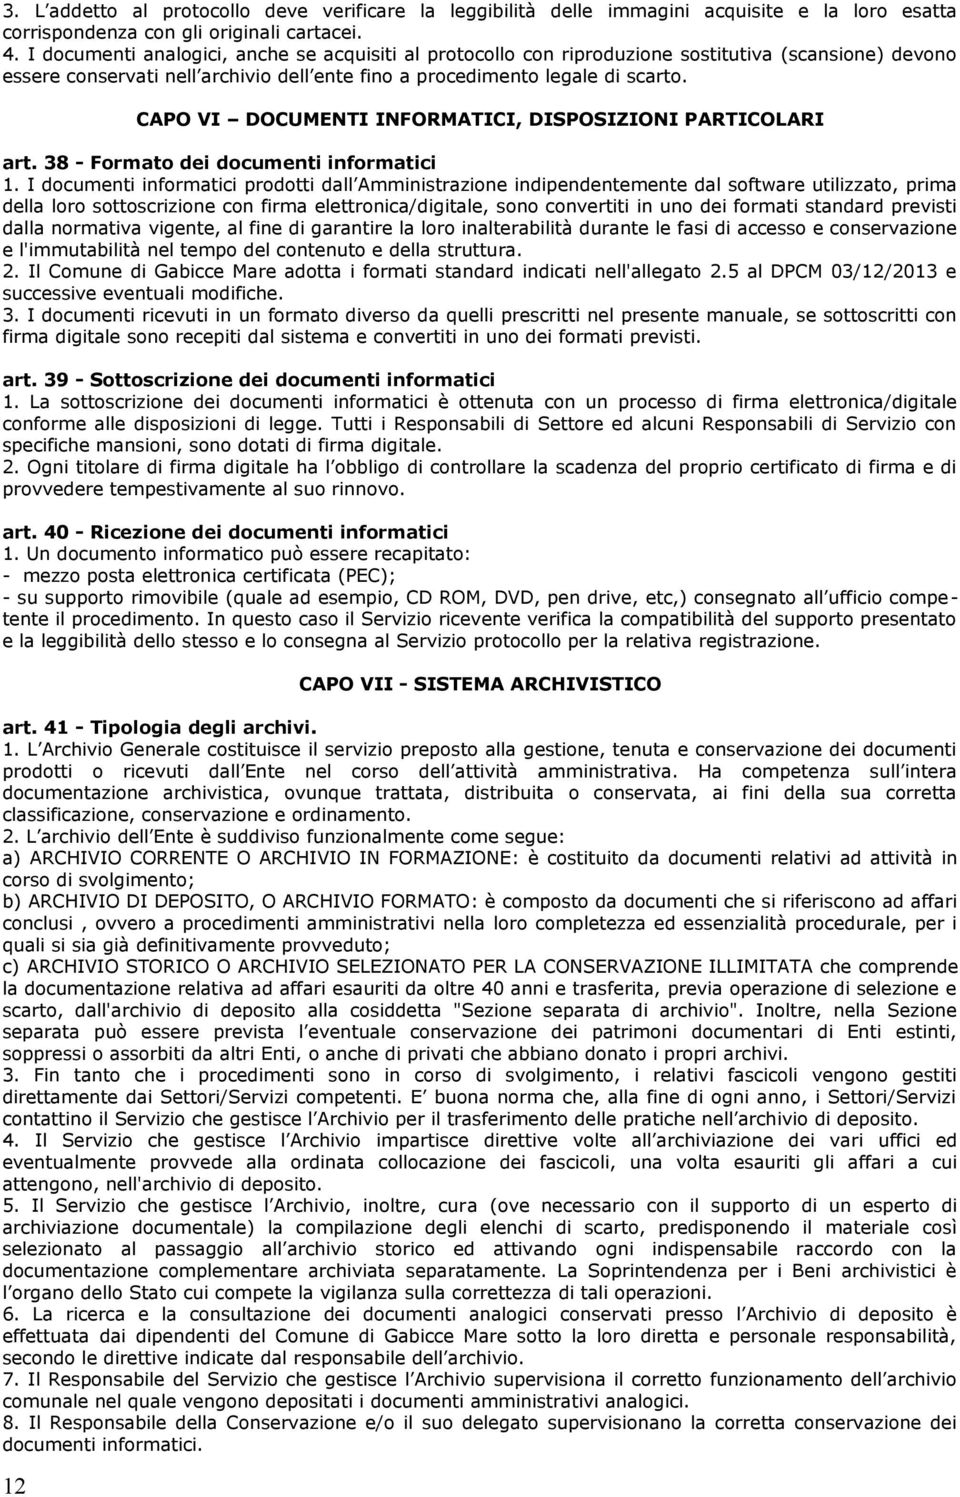 CAPO VI DOCUMENTI INFORMATICI, DISPOSIZIONI PARTICOLARI art. 38 - Formato dei documenti informatici 1.